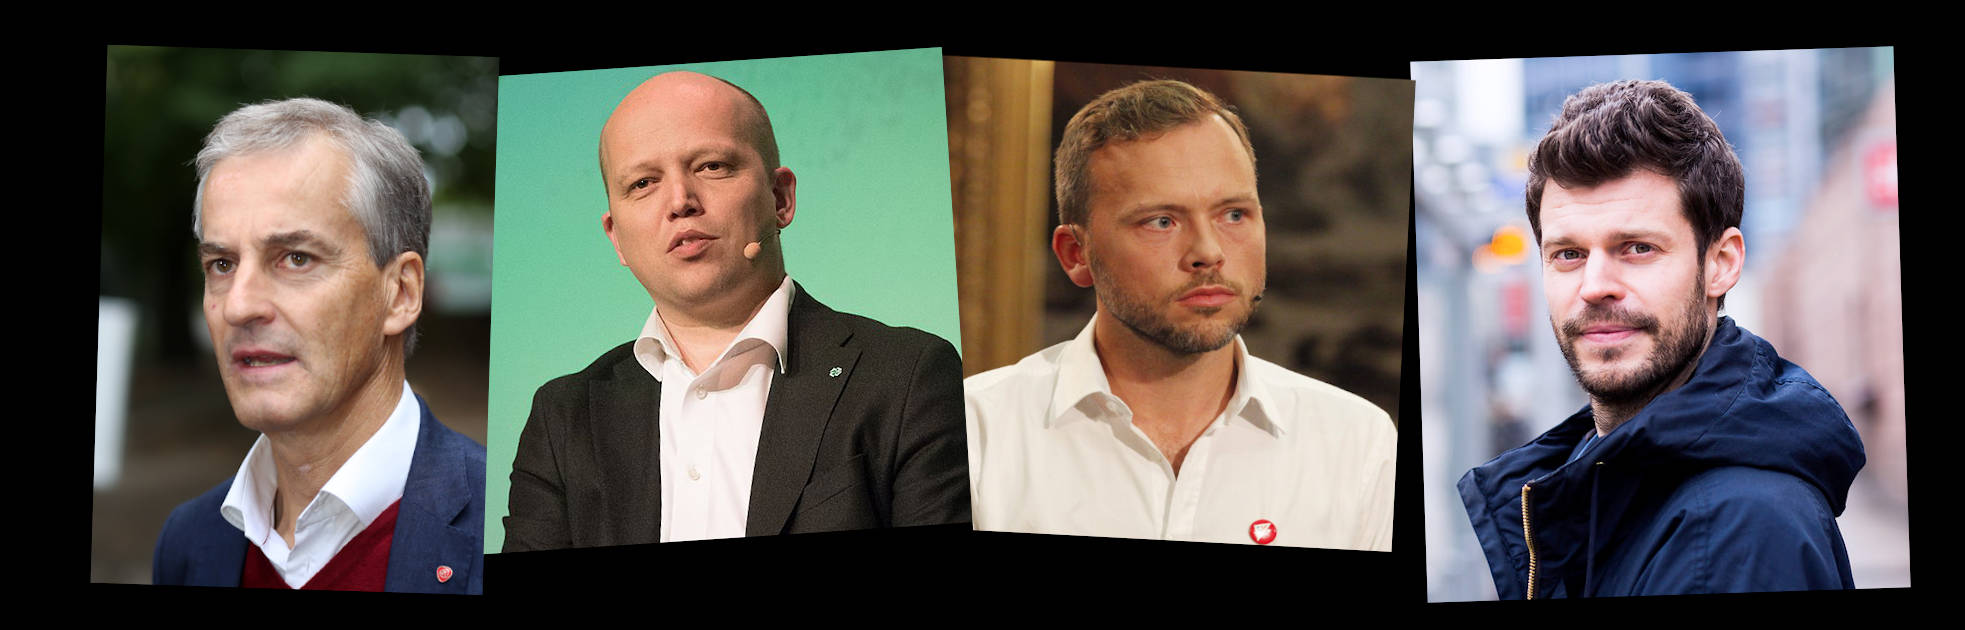 Det nye firkløveret: Jonas Gahr Støre (Ap), Trygve Slagsvold Vedum (Sp), Audun Lysbakken (SV), Bjørnar Moxnes (R)